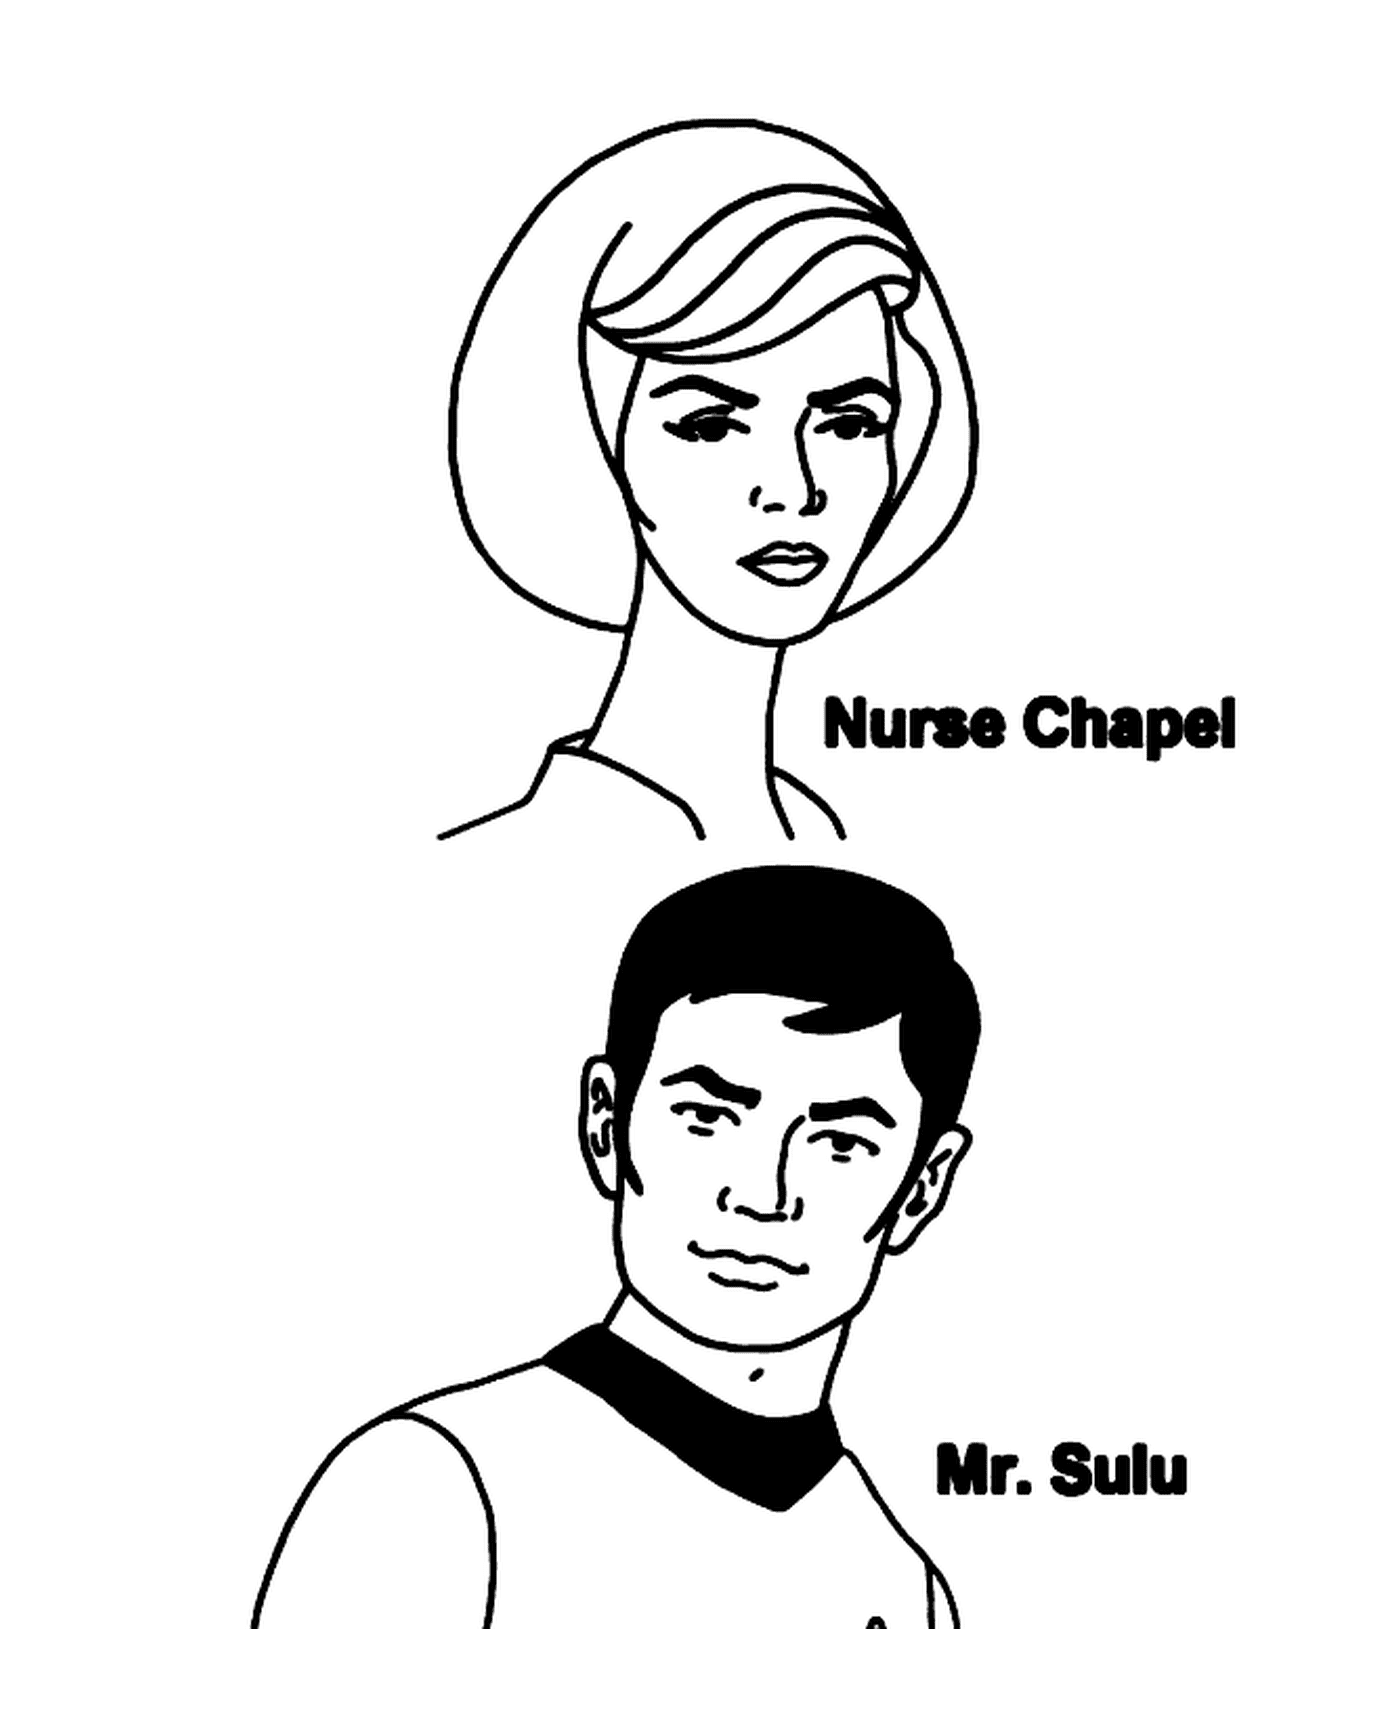  护士礼拜堂和星际迷航苏鲁先生 